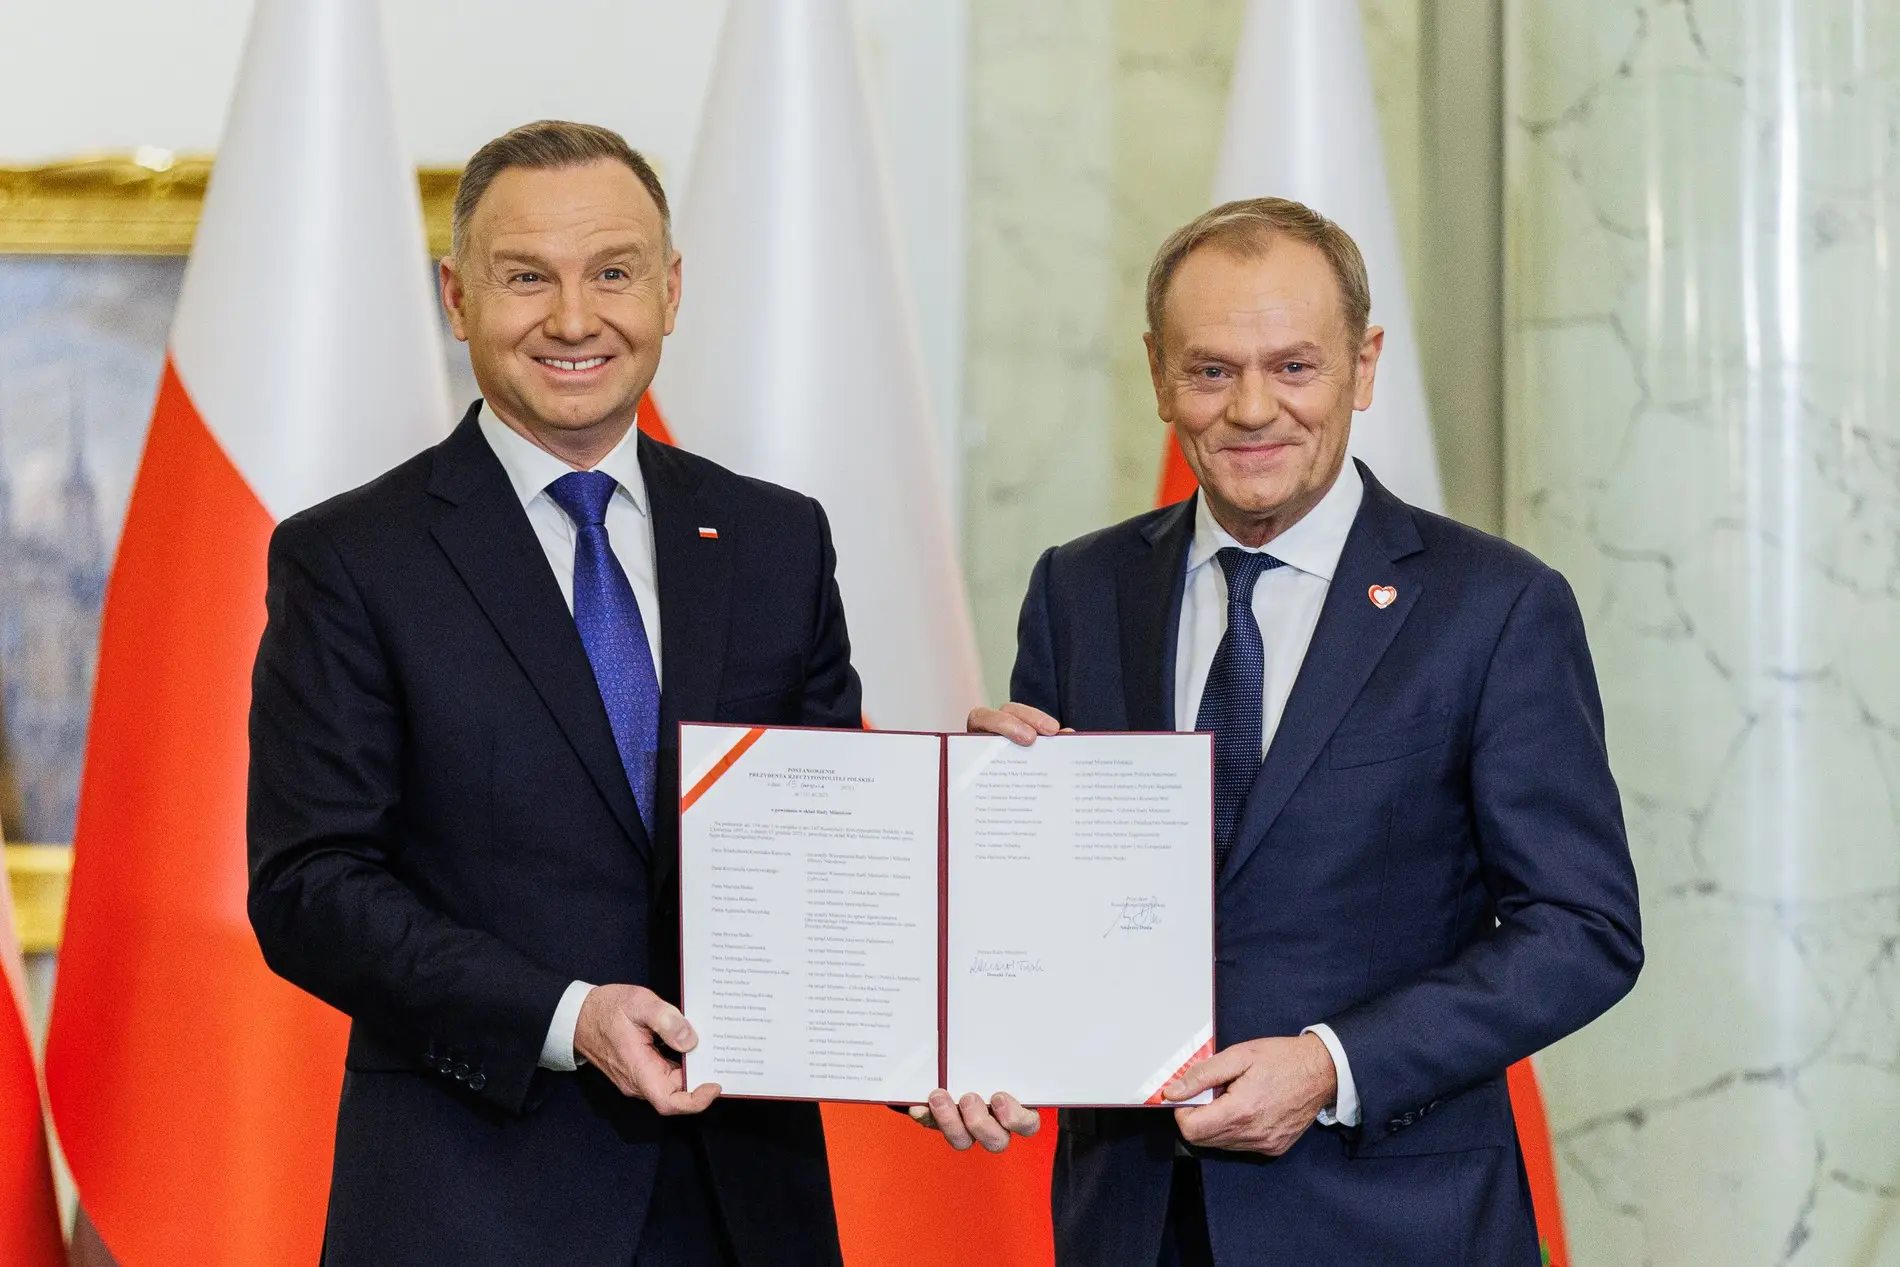 Andrzej Duda und Donald Tusk posieren für ein Foto im Präsidentenpalast.